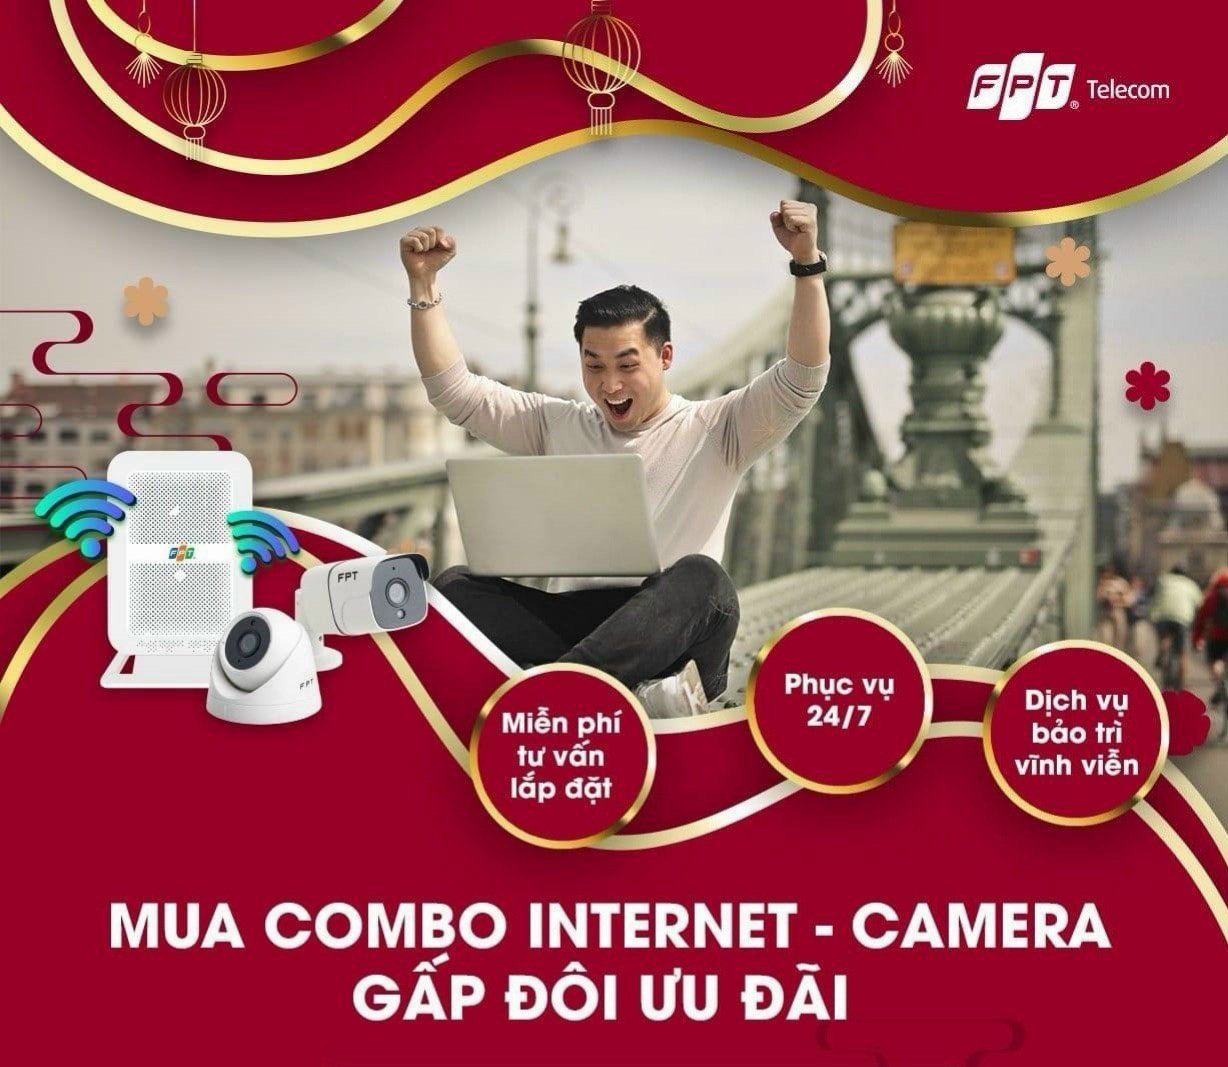 Lắp đặt internet FPT Đà Nẵng siêu tốc, giá rẻ, uy tín nhất